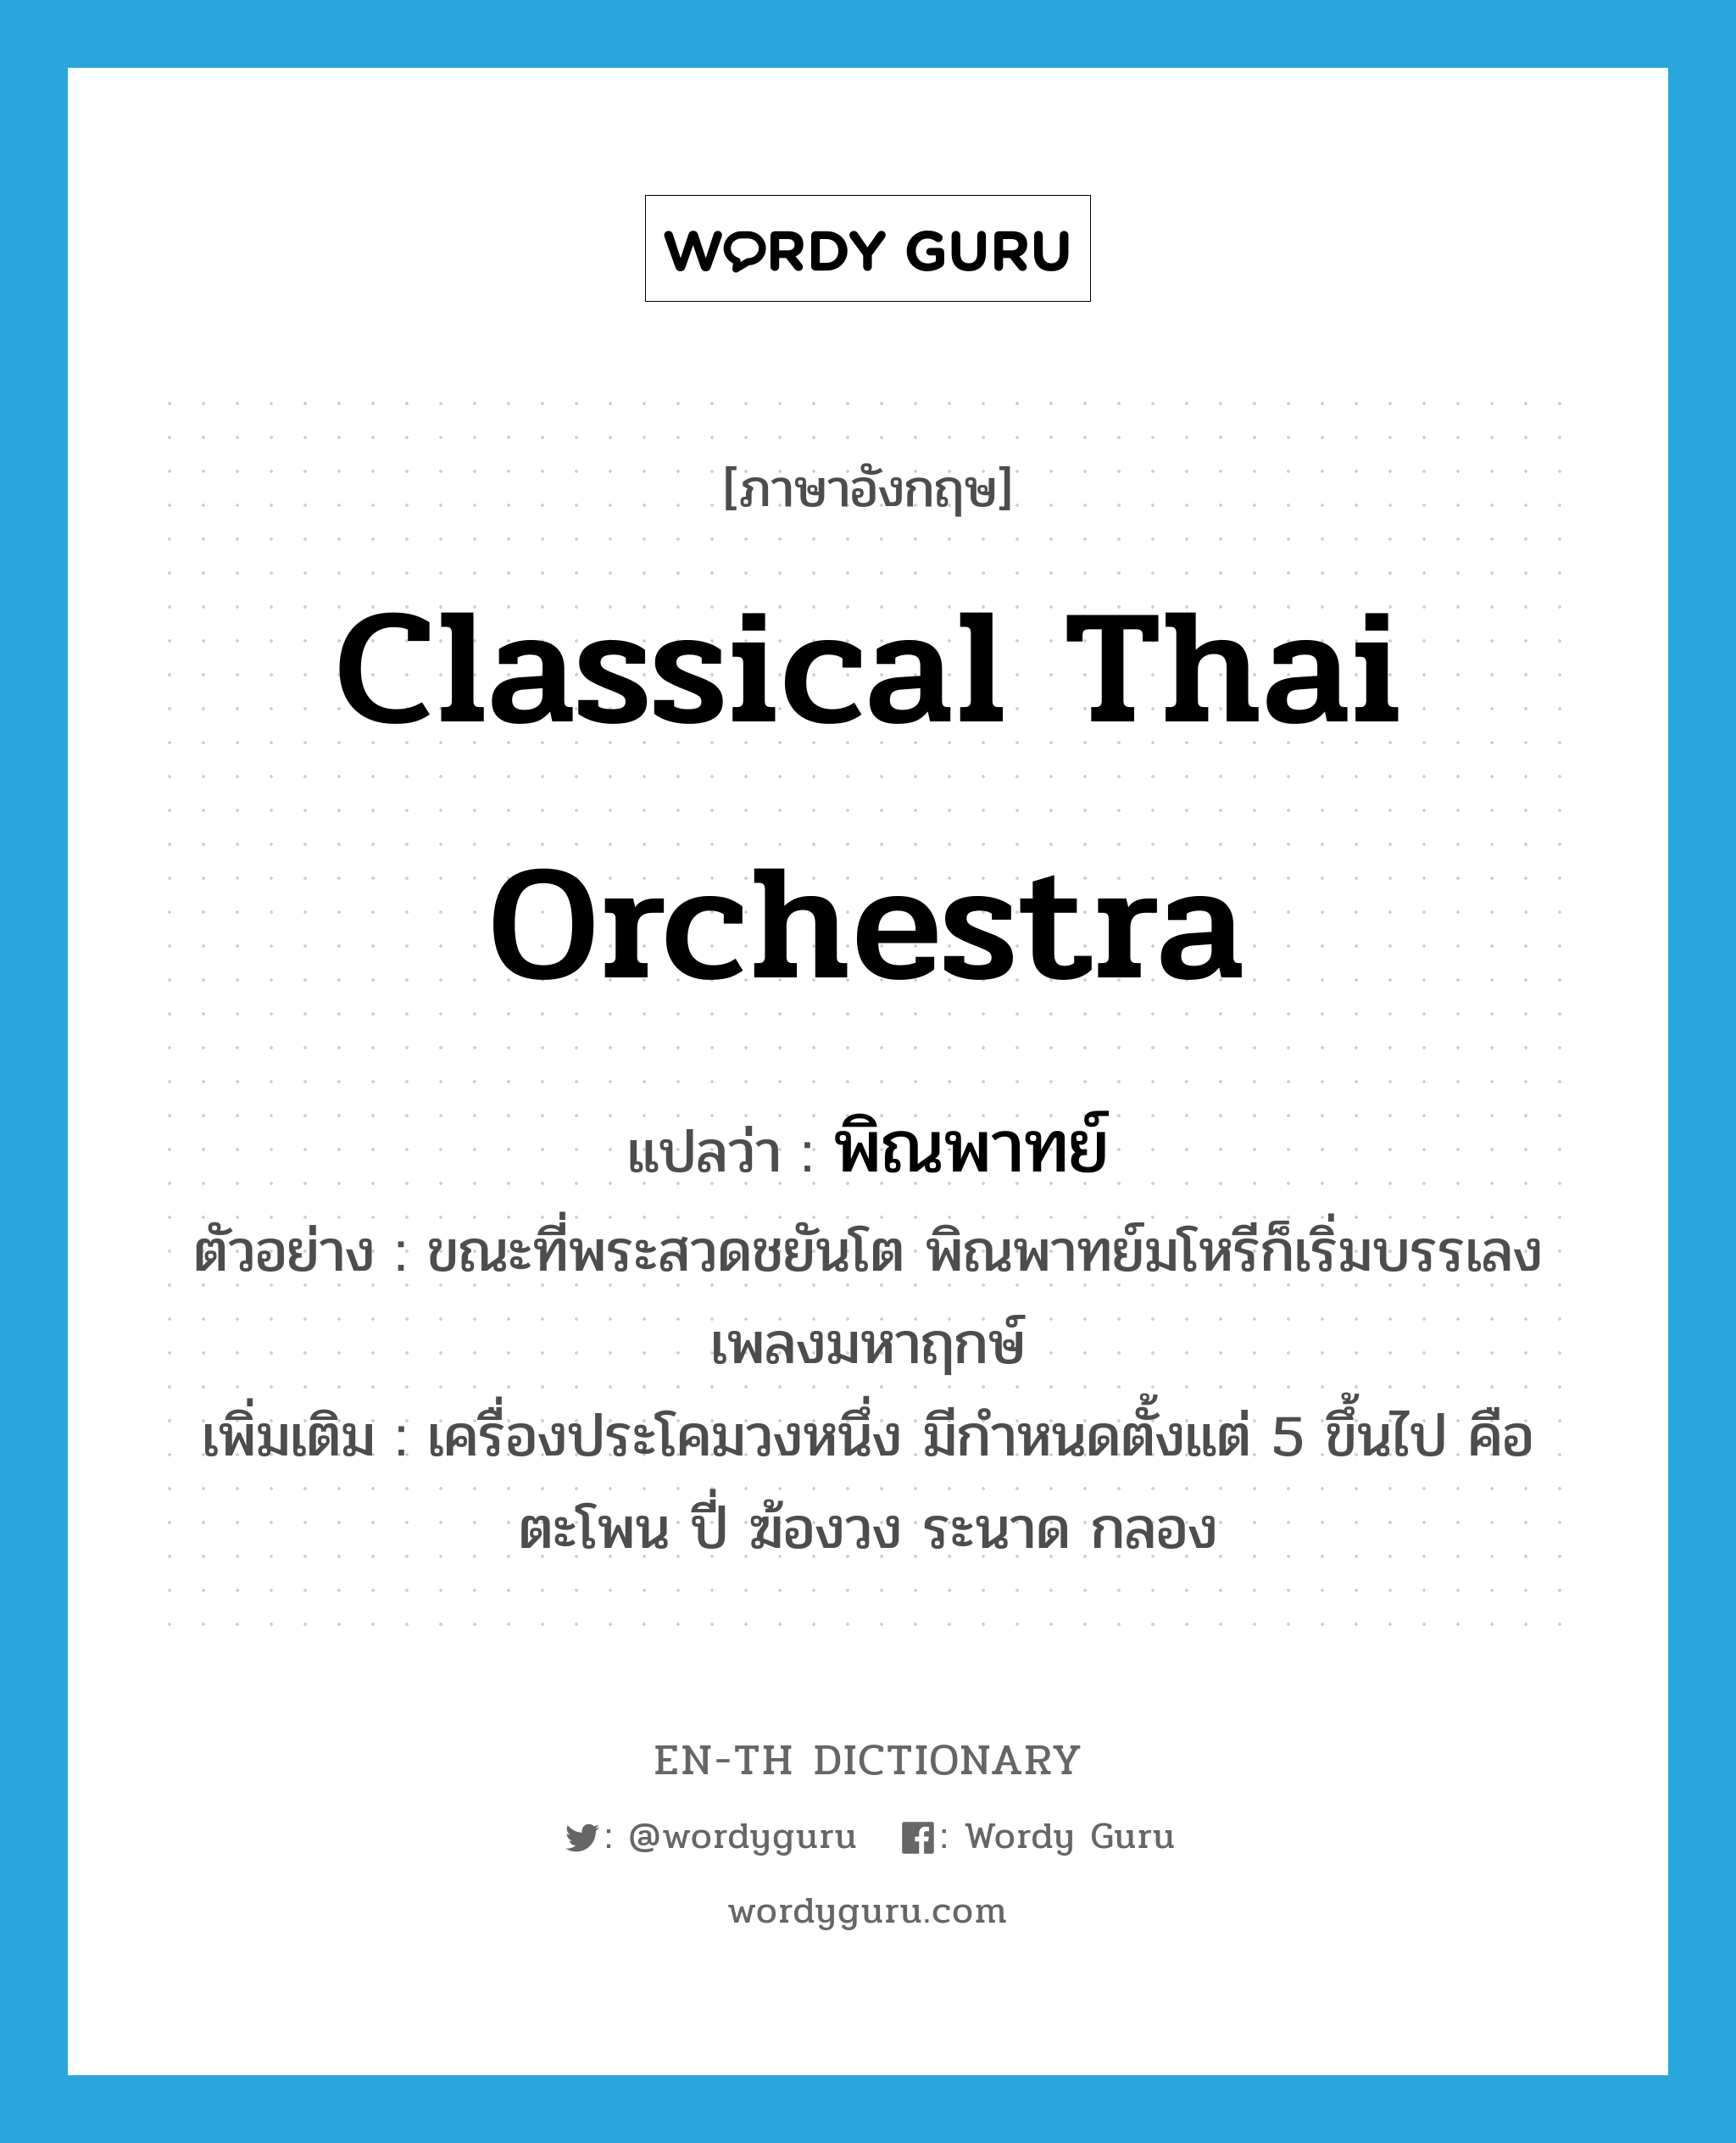 classical Thai orchestra แปลว่า?, คำศัพท์ภาษาอังกฤษ classical Thai orchestra แปลว่า พิณพาทย์ ประเภท N ตัวอย่าง ขณะที่พระสวดชยันโต พิณพาทย์มโหรีก็เริ่มบรรเลงเพลงมหาฤกษ์ เพิ่มเติม เครื่องประโคมวงหนึ่ง มีกำหนดตั้งแต่ 5 ขึ้นไป คือ ตะโพน ปี่ ฆ้องวง ระนาด กลอง หมวด N